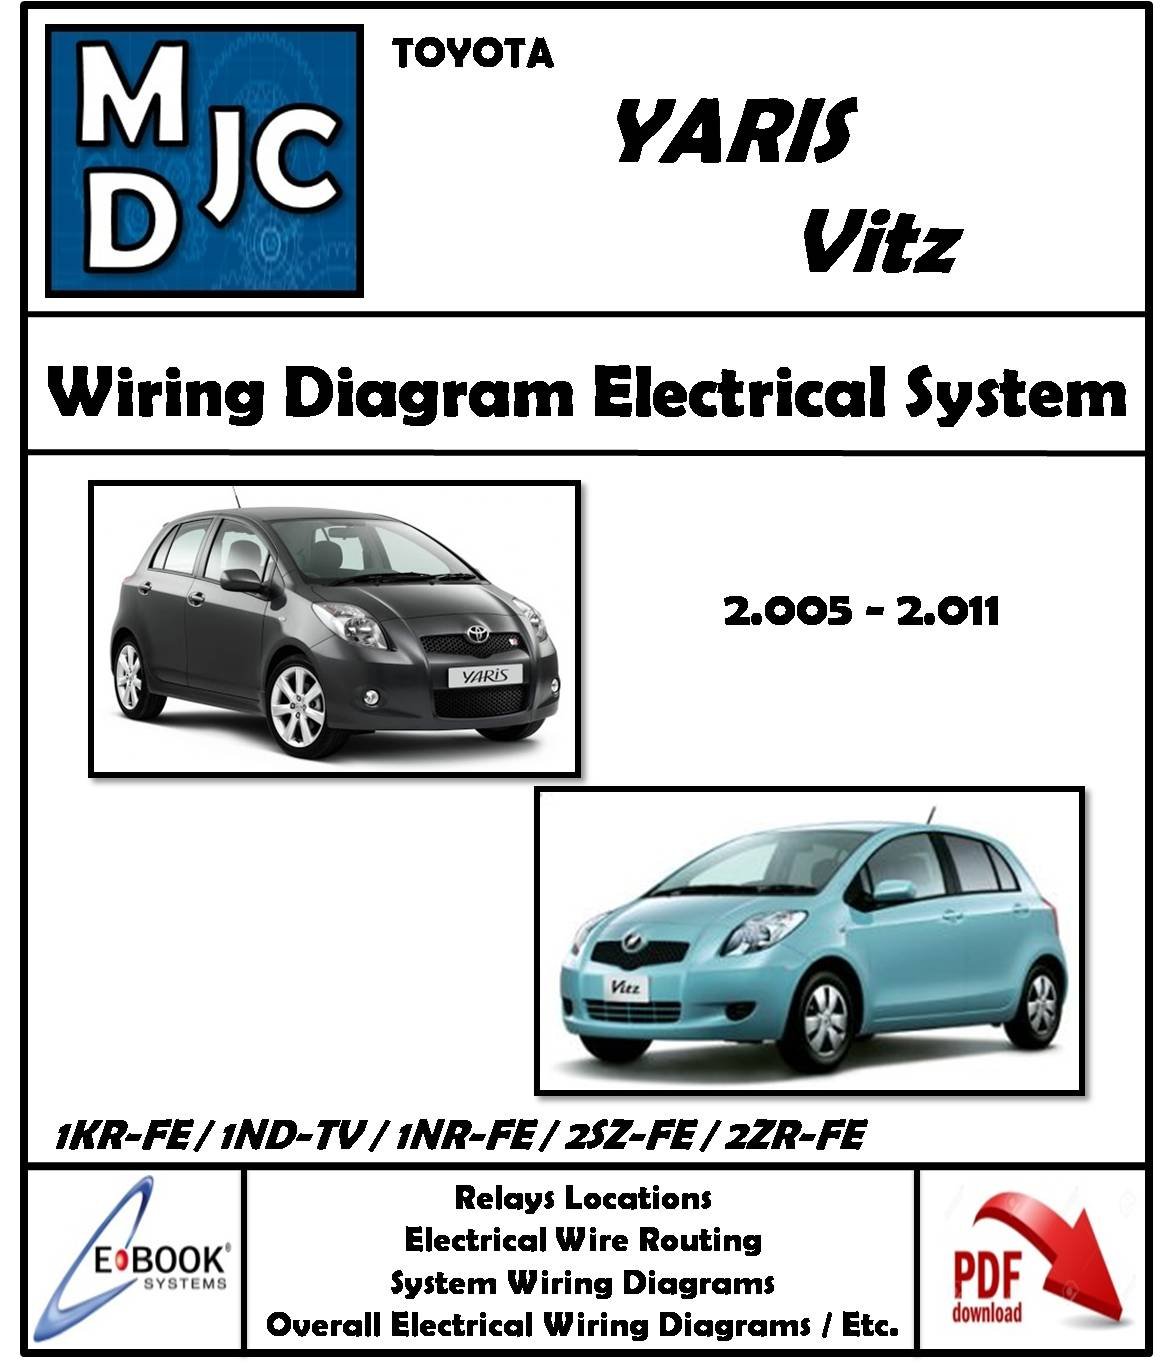 Toyota Yaris / Vitz / 2005 - 2011